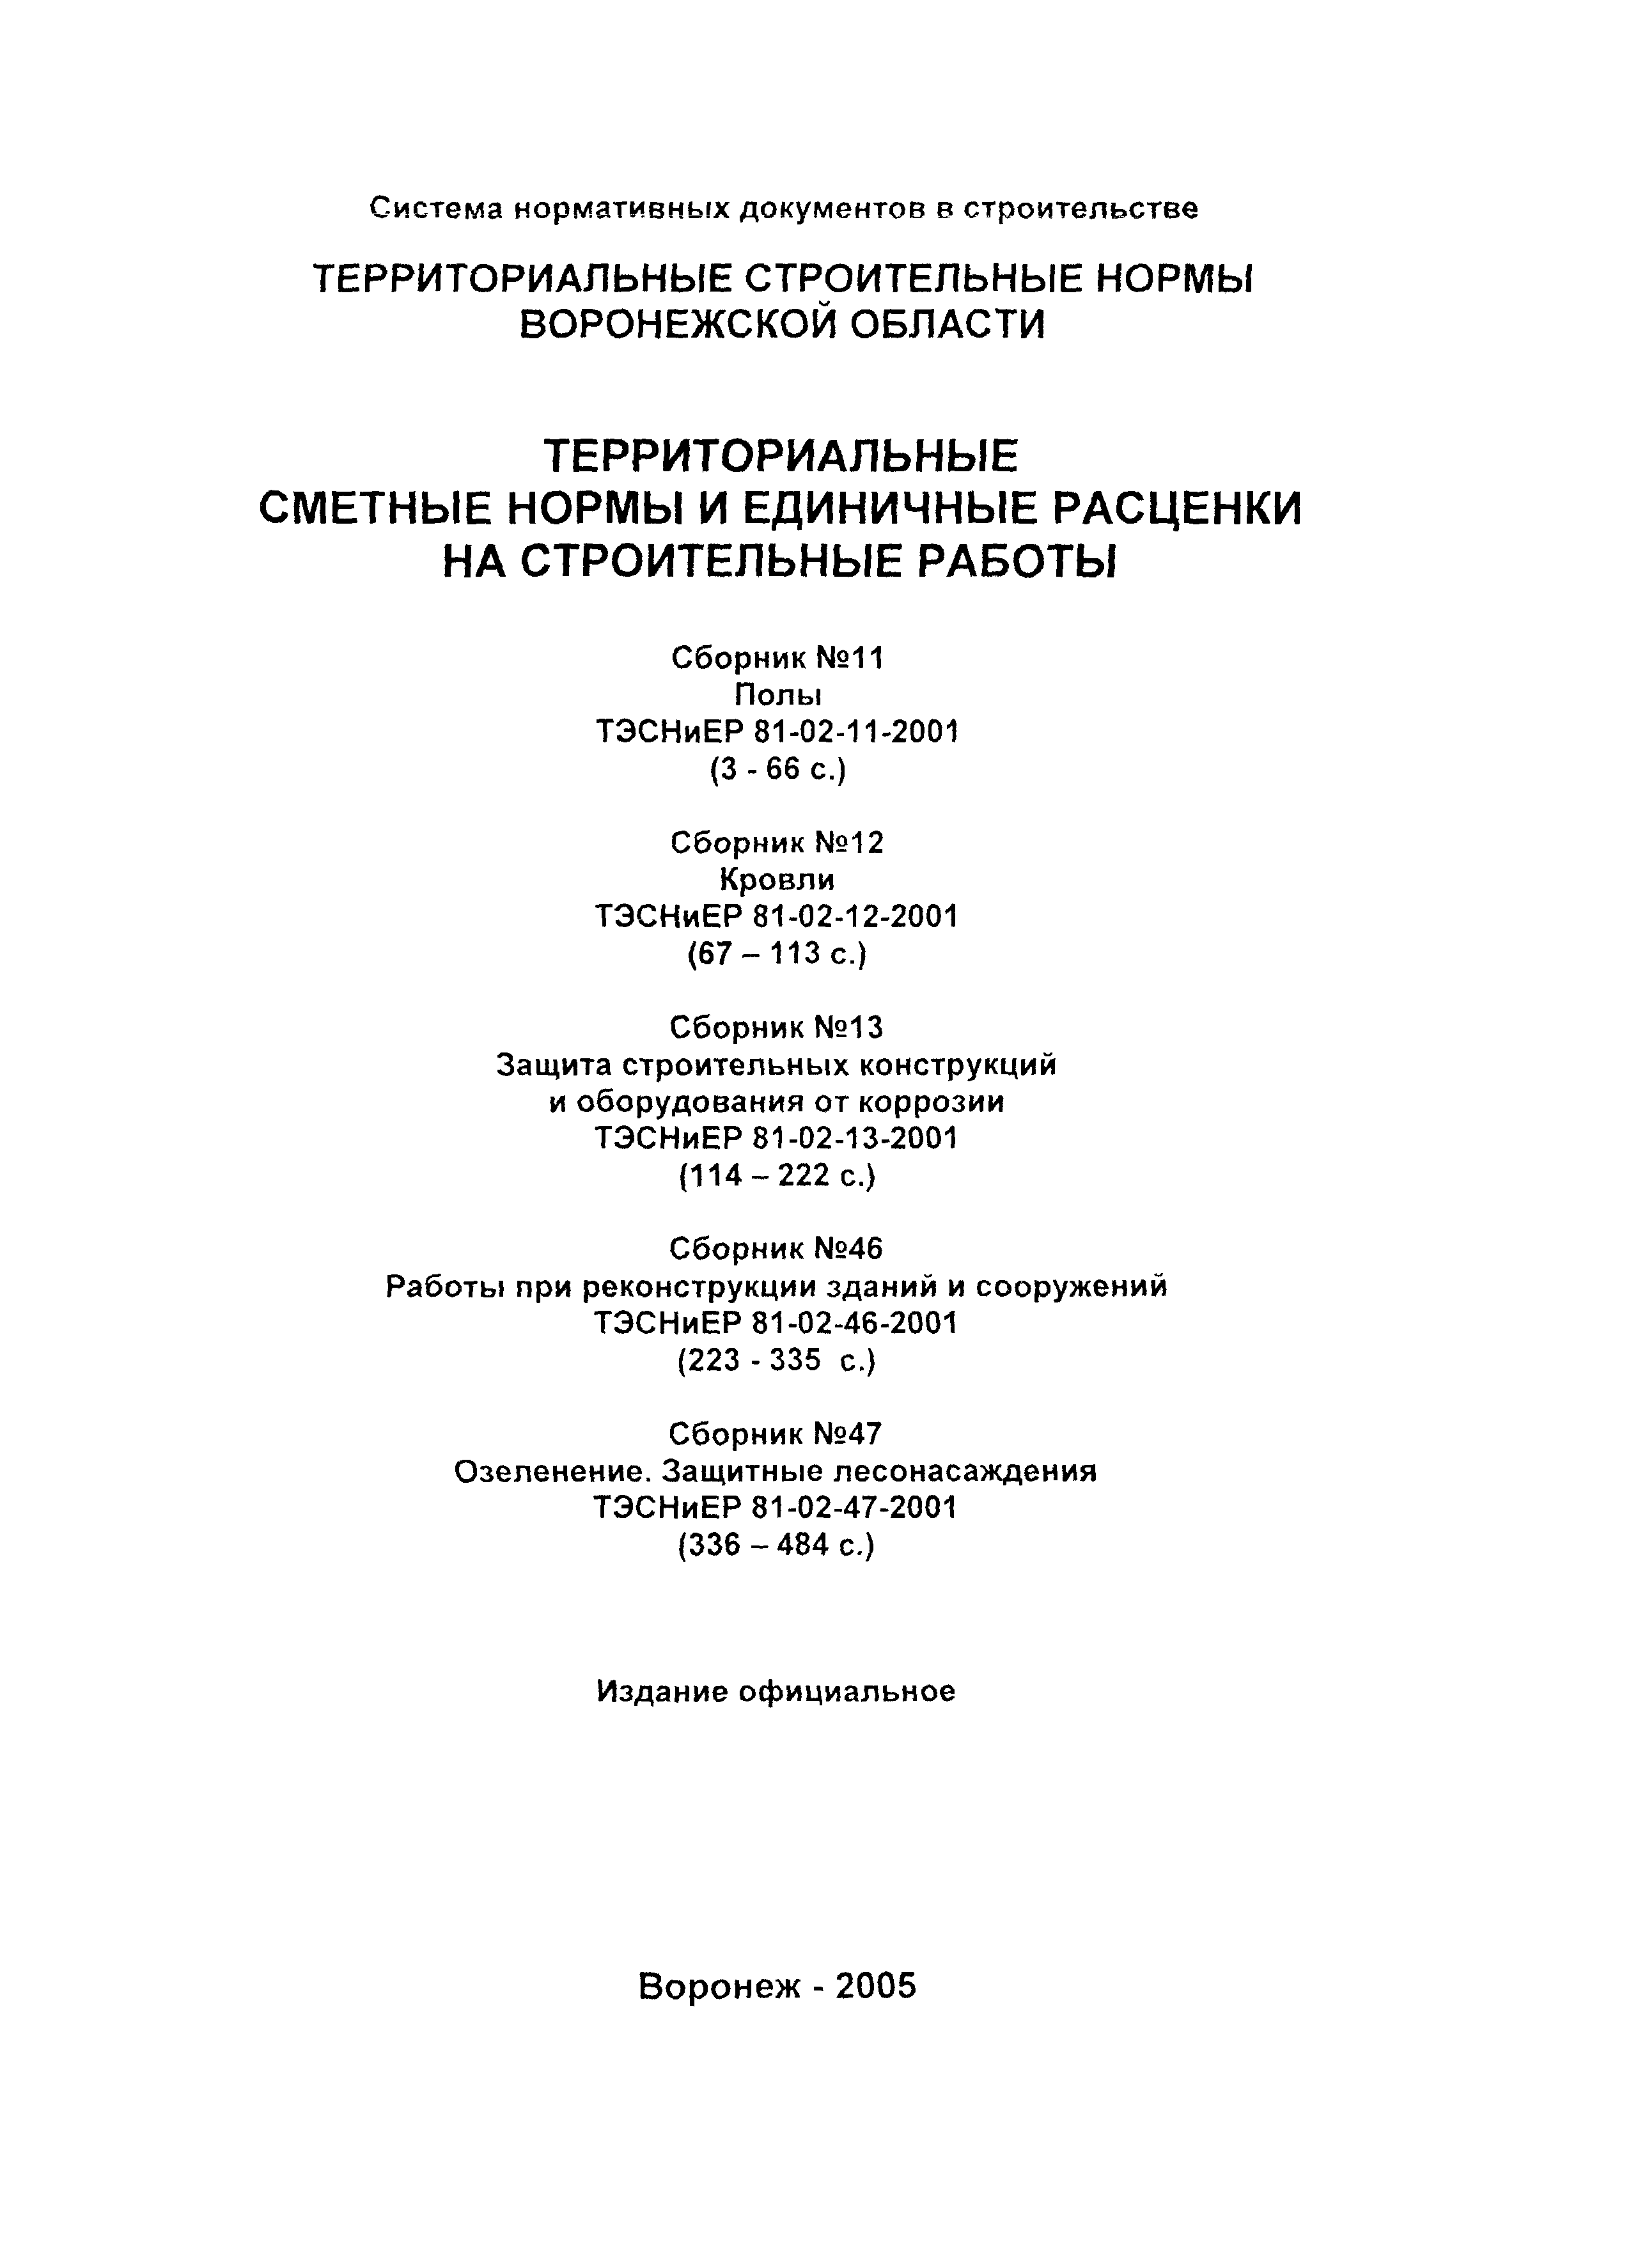 ТЭСНиЕР Воронежская область 81-02-47-2001